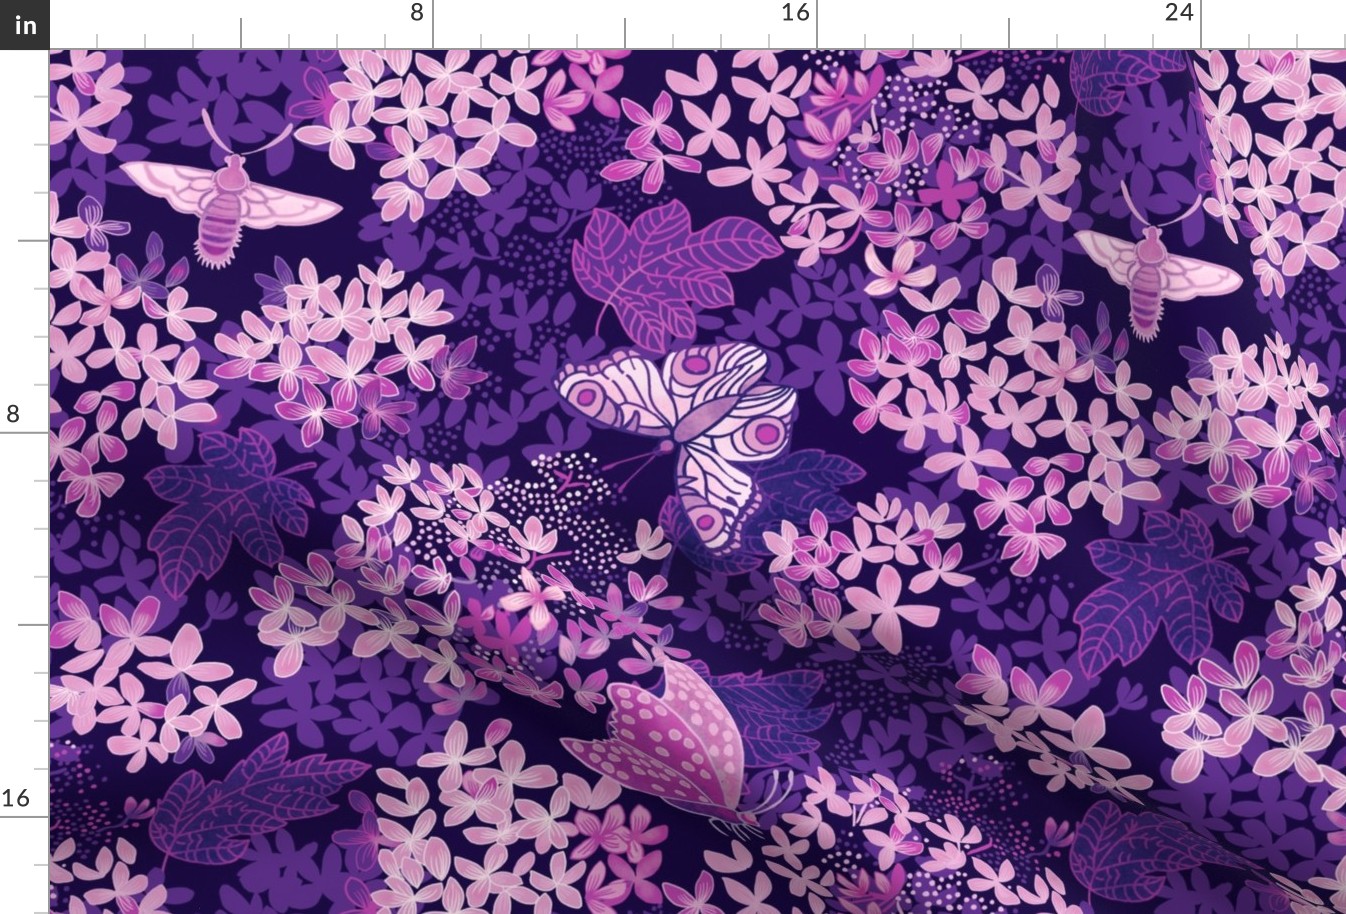 Hydrangea in the garden with butterflies_periwinkle monochrome